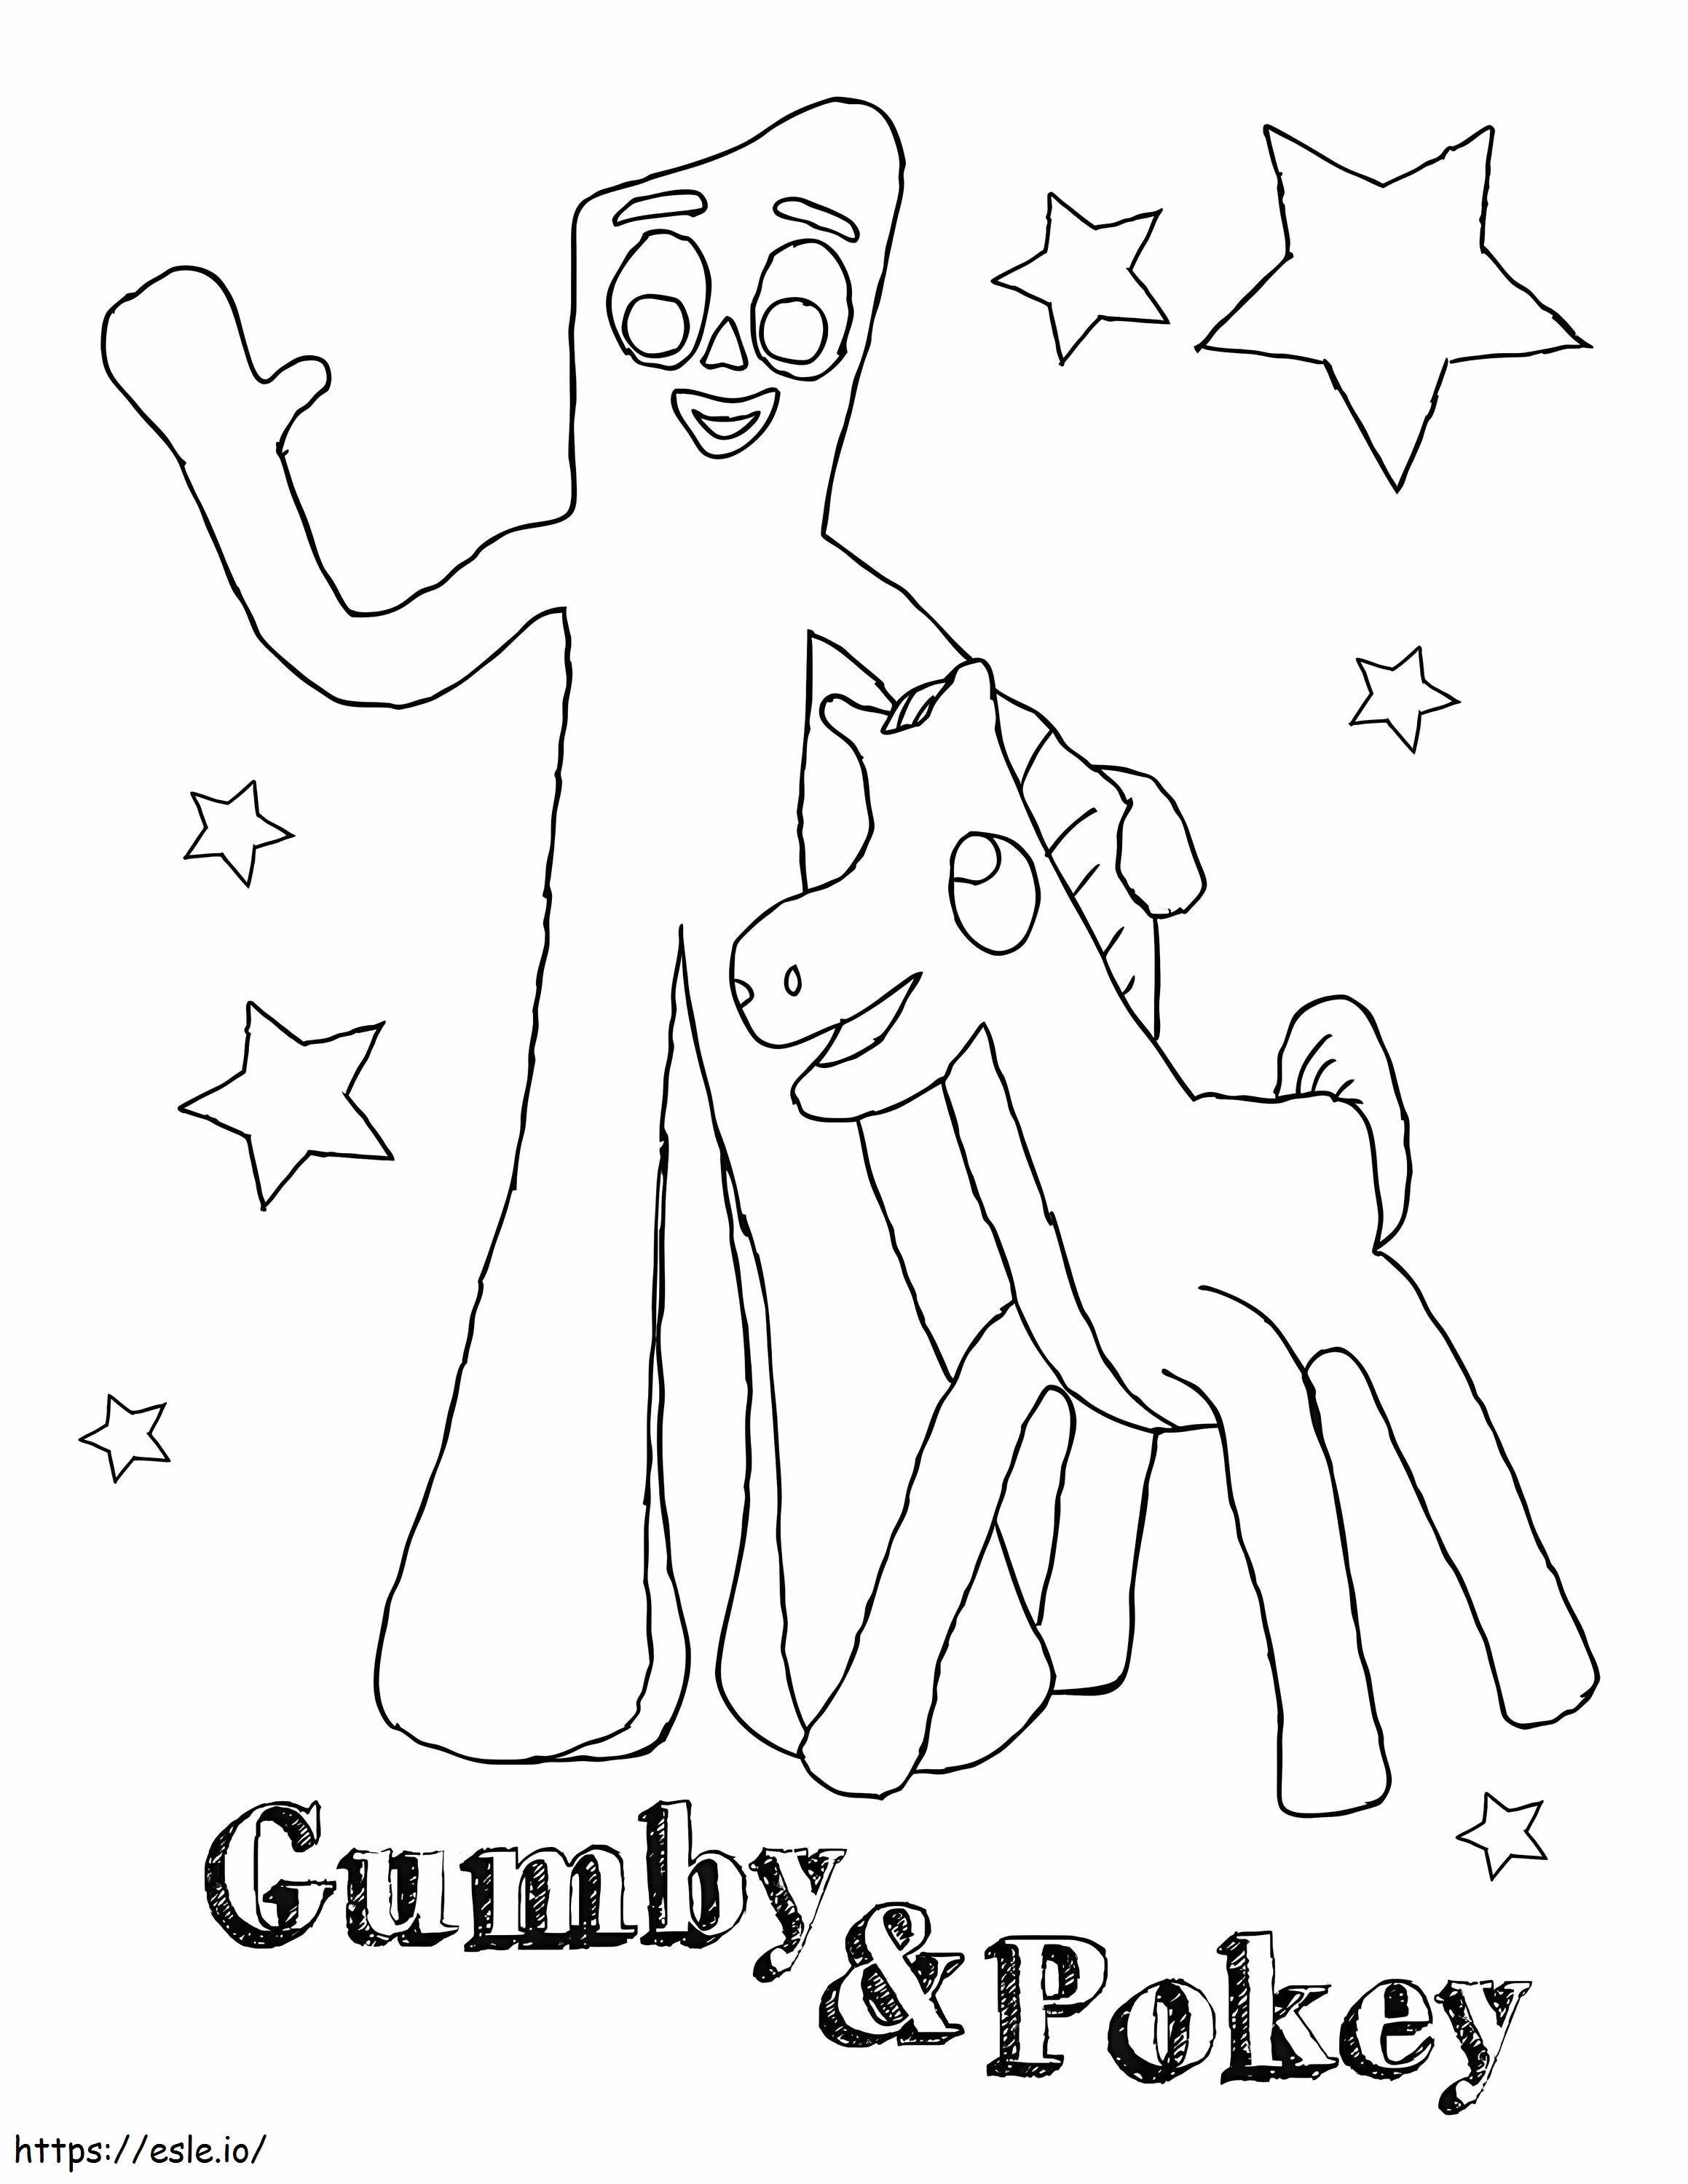 Gumby und Pokey ausmalbilder